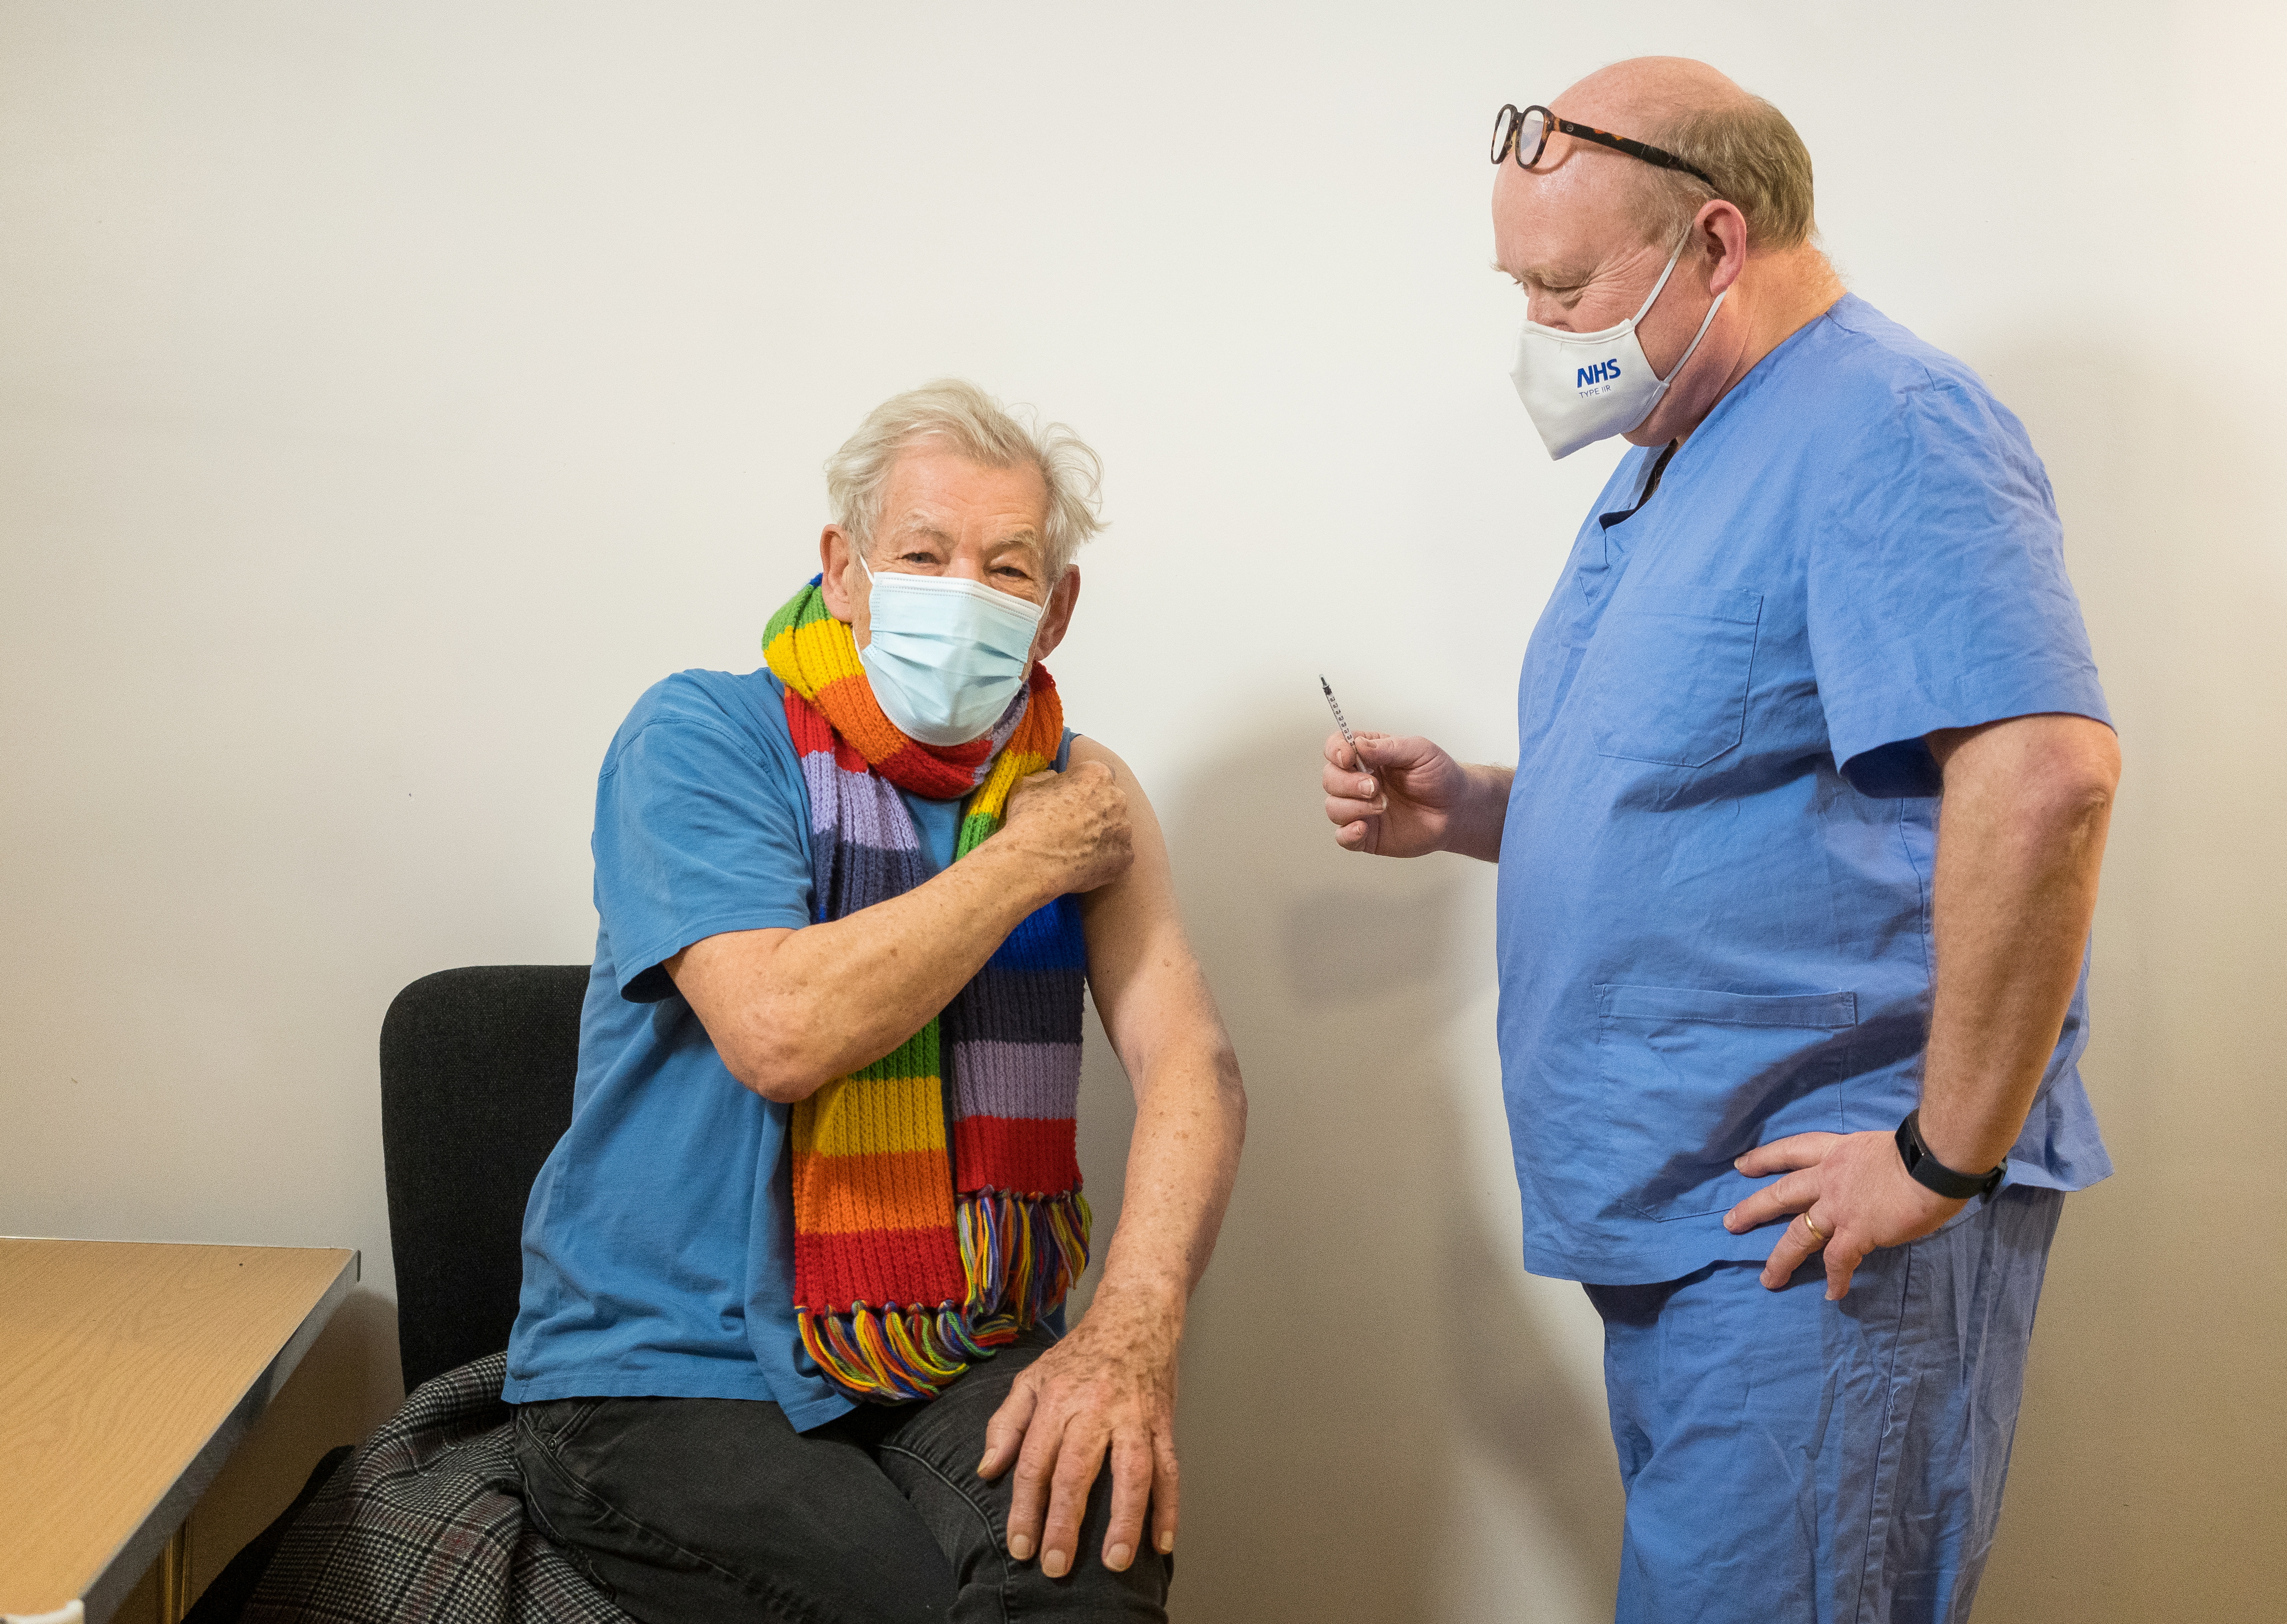 Ian McKellen, actor de Gandalf, eufórico tras recibir vacuna de Covid-19